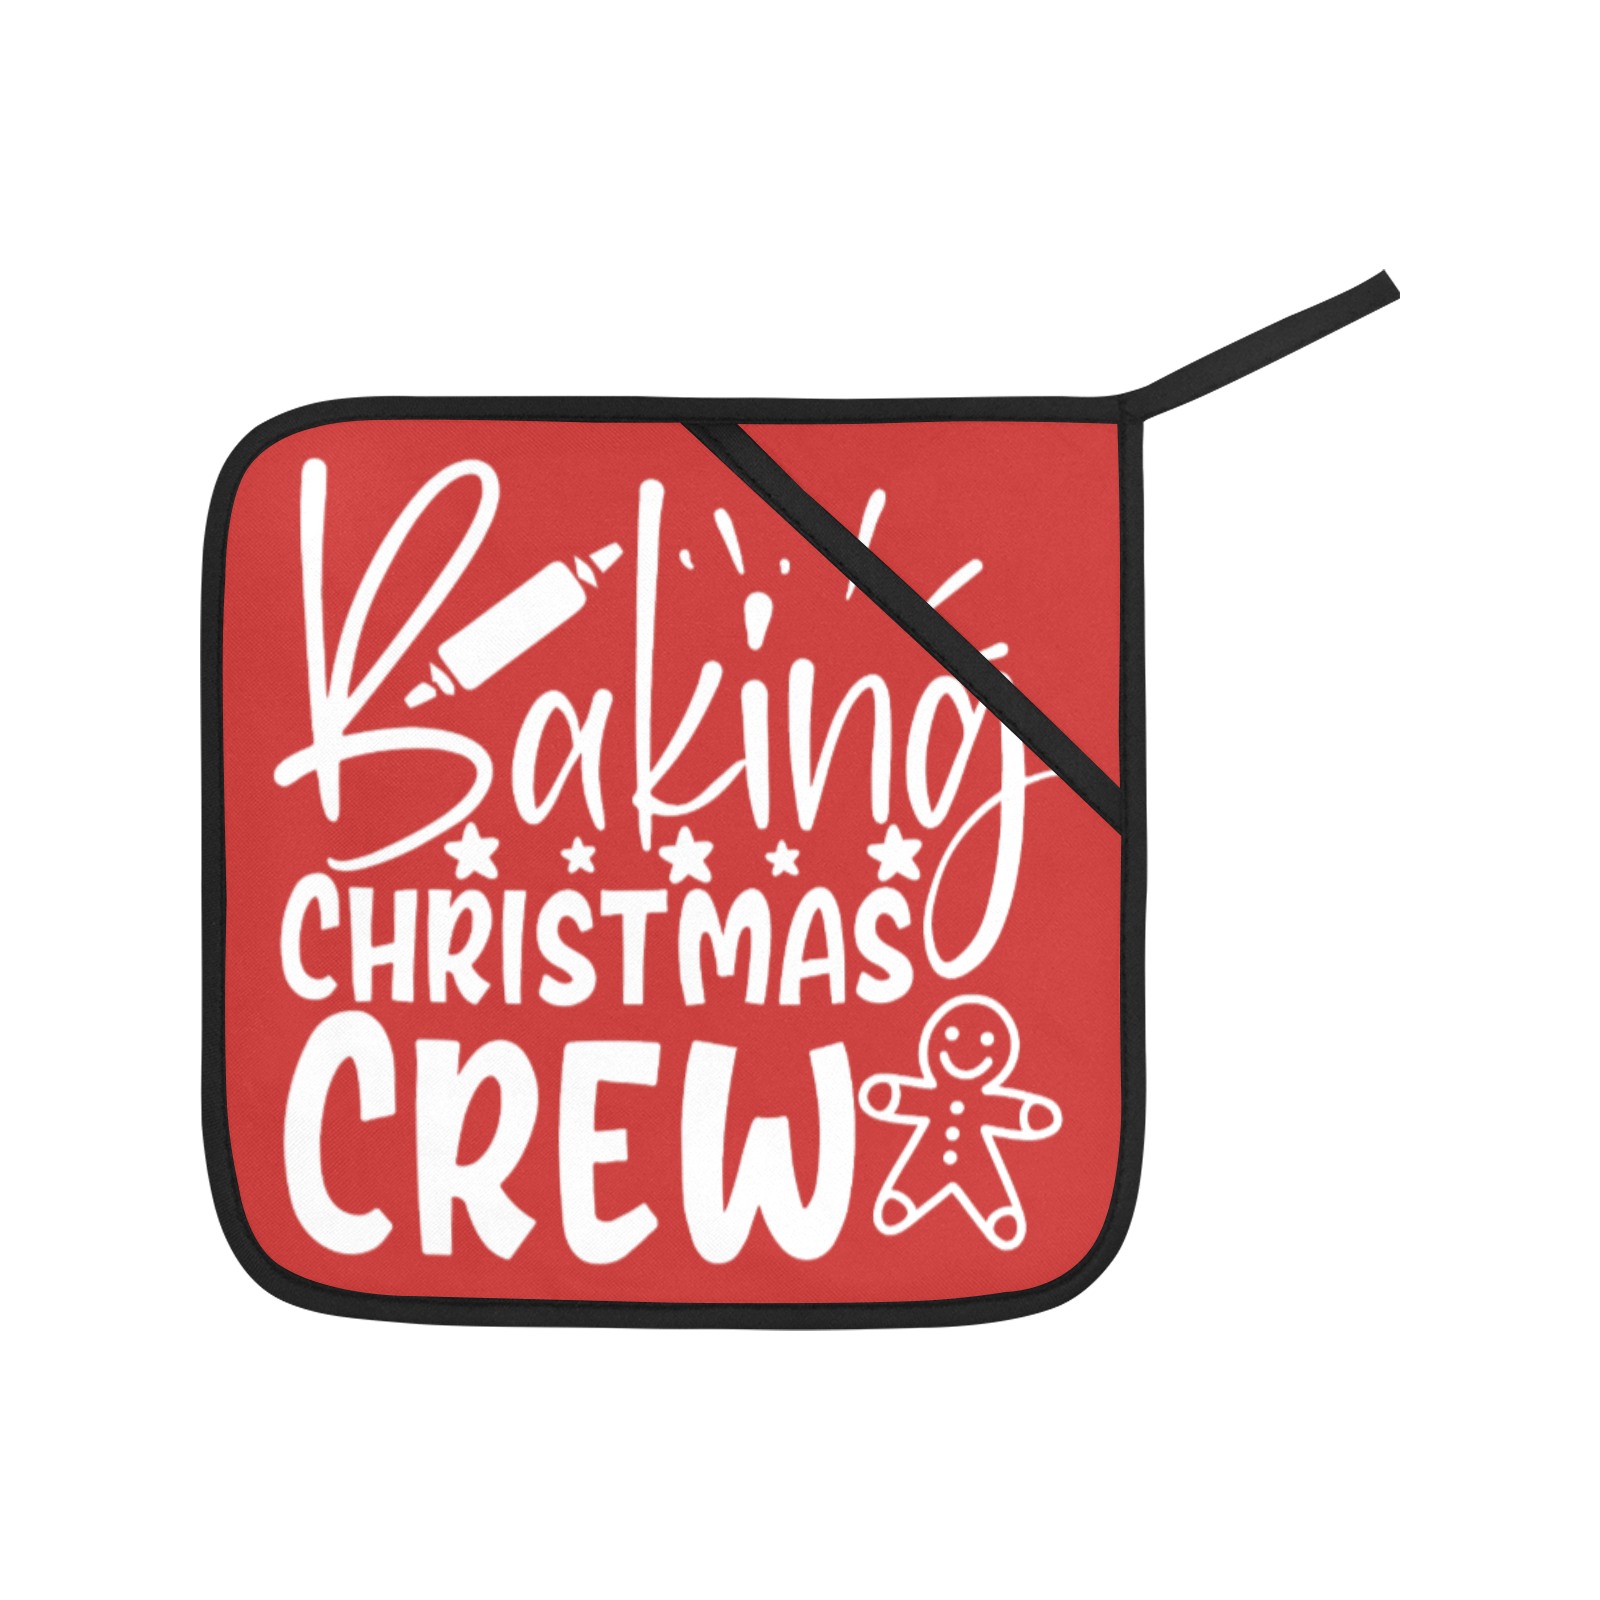 Baking Christmas Crew Oven Mitt & Pot Holder